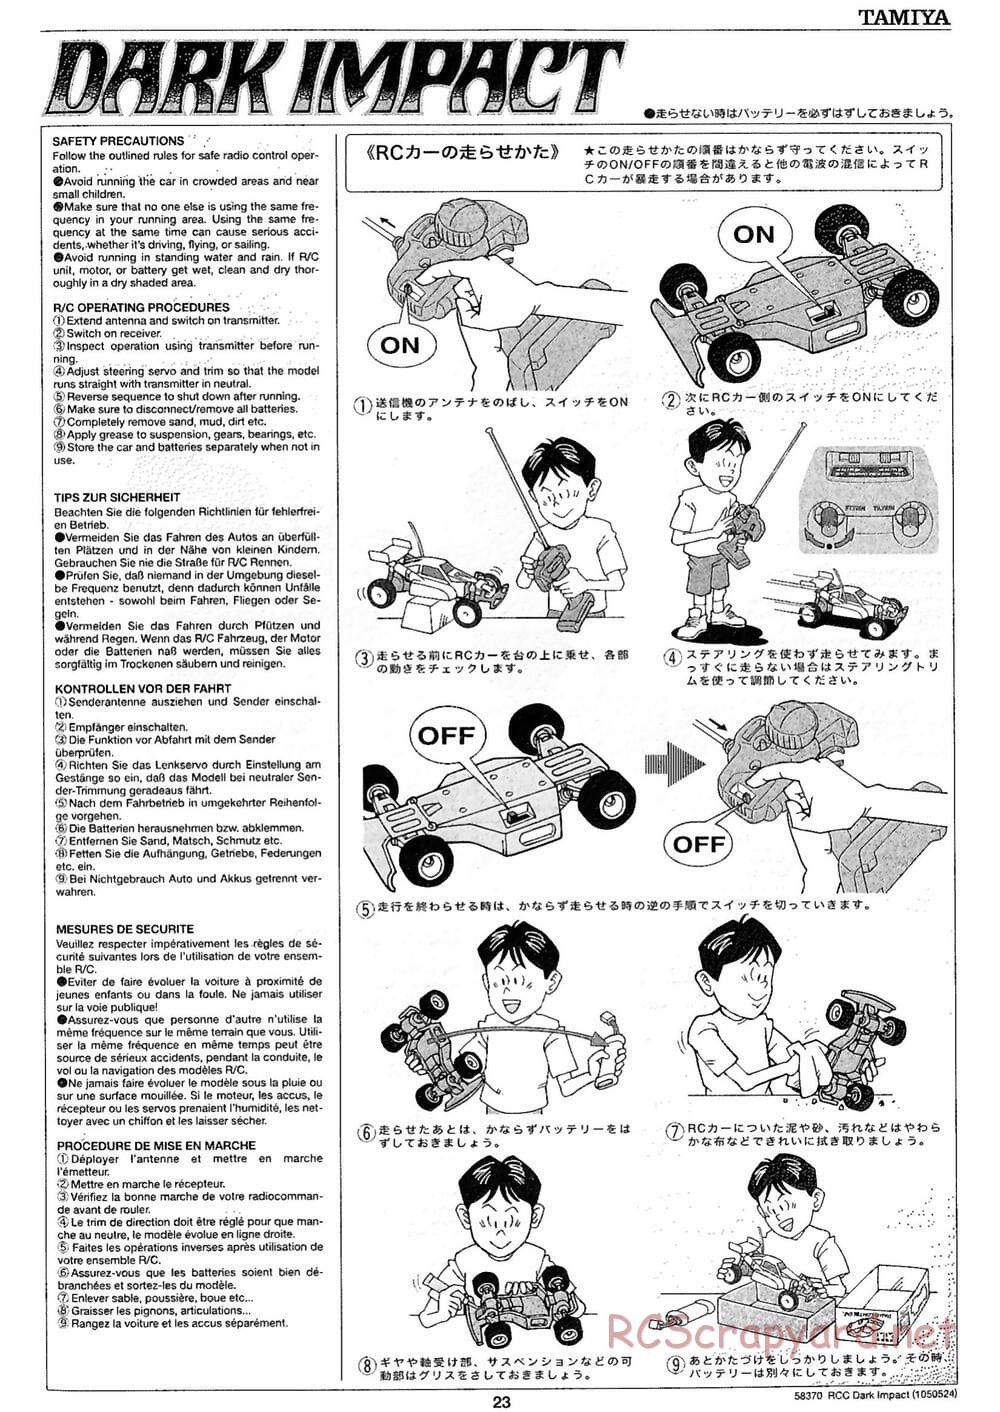 Tamiya - Dark Impact Chassis - Manual - Page 23